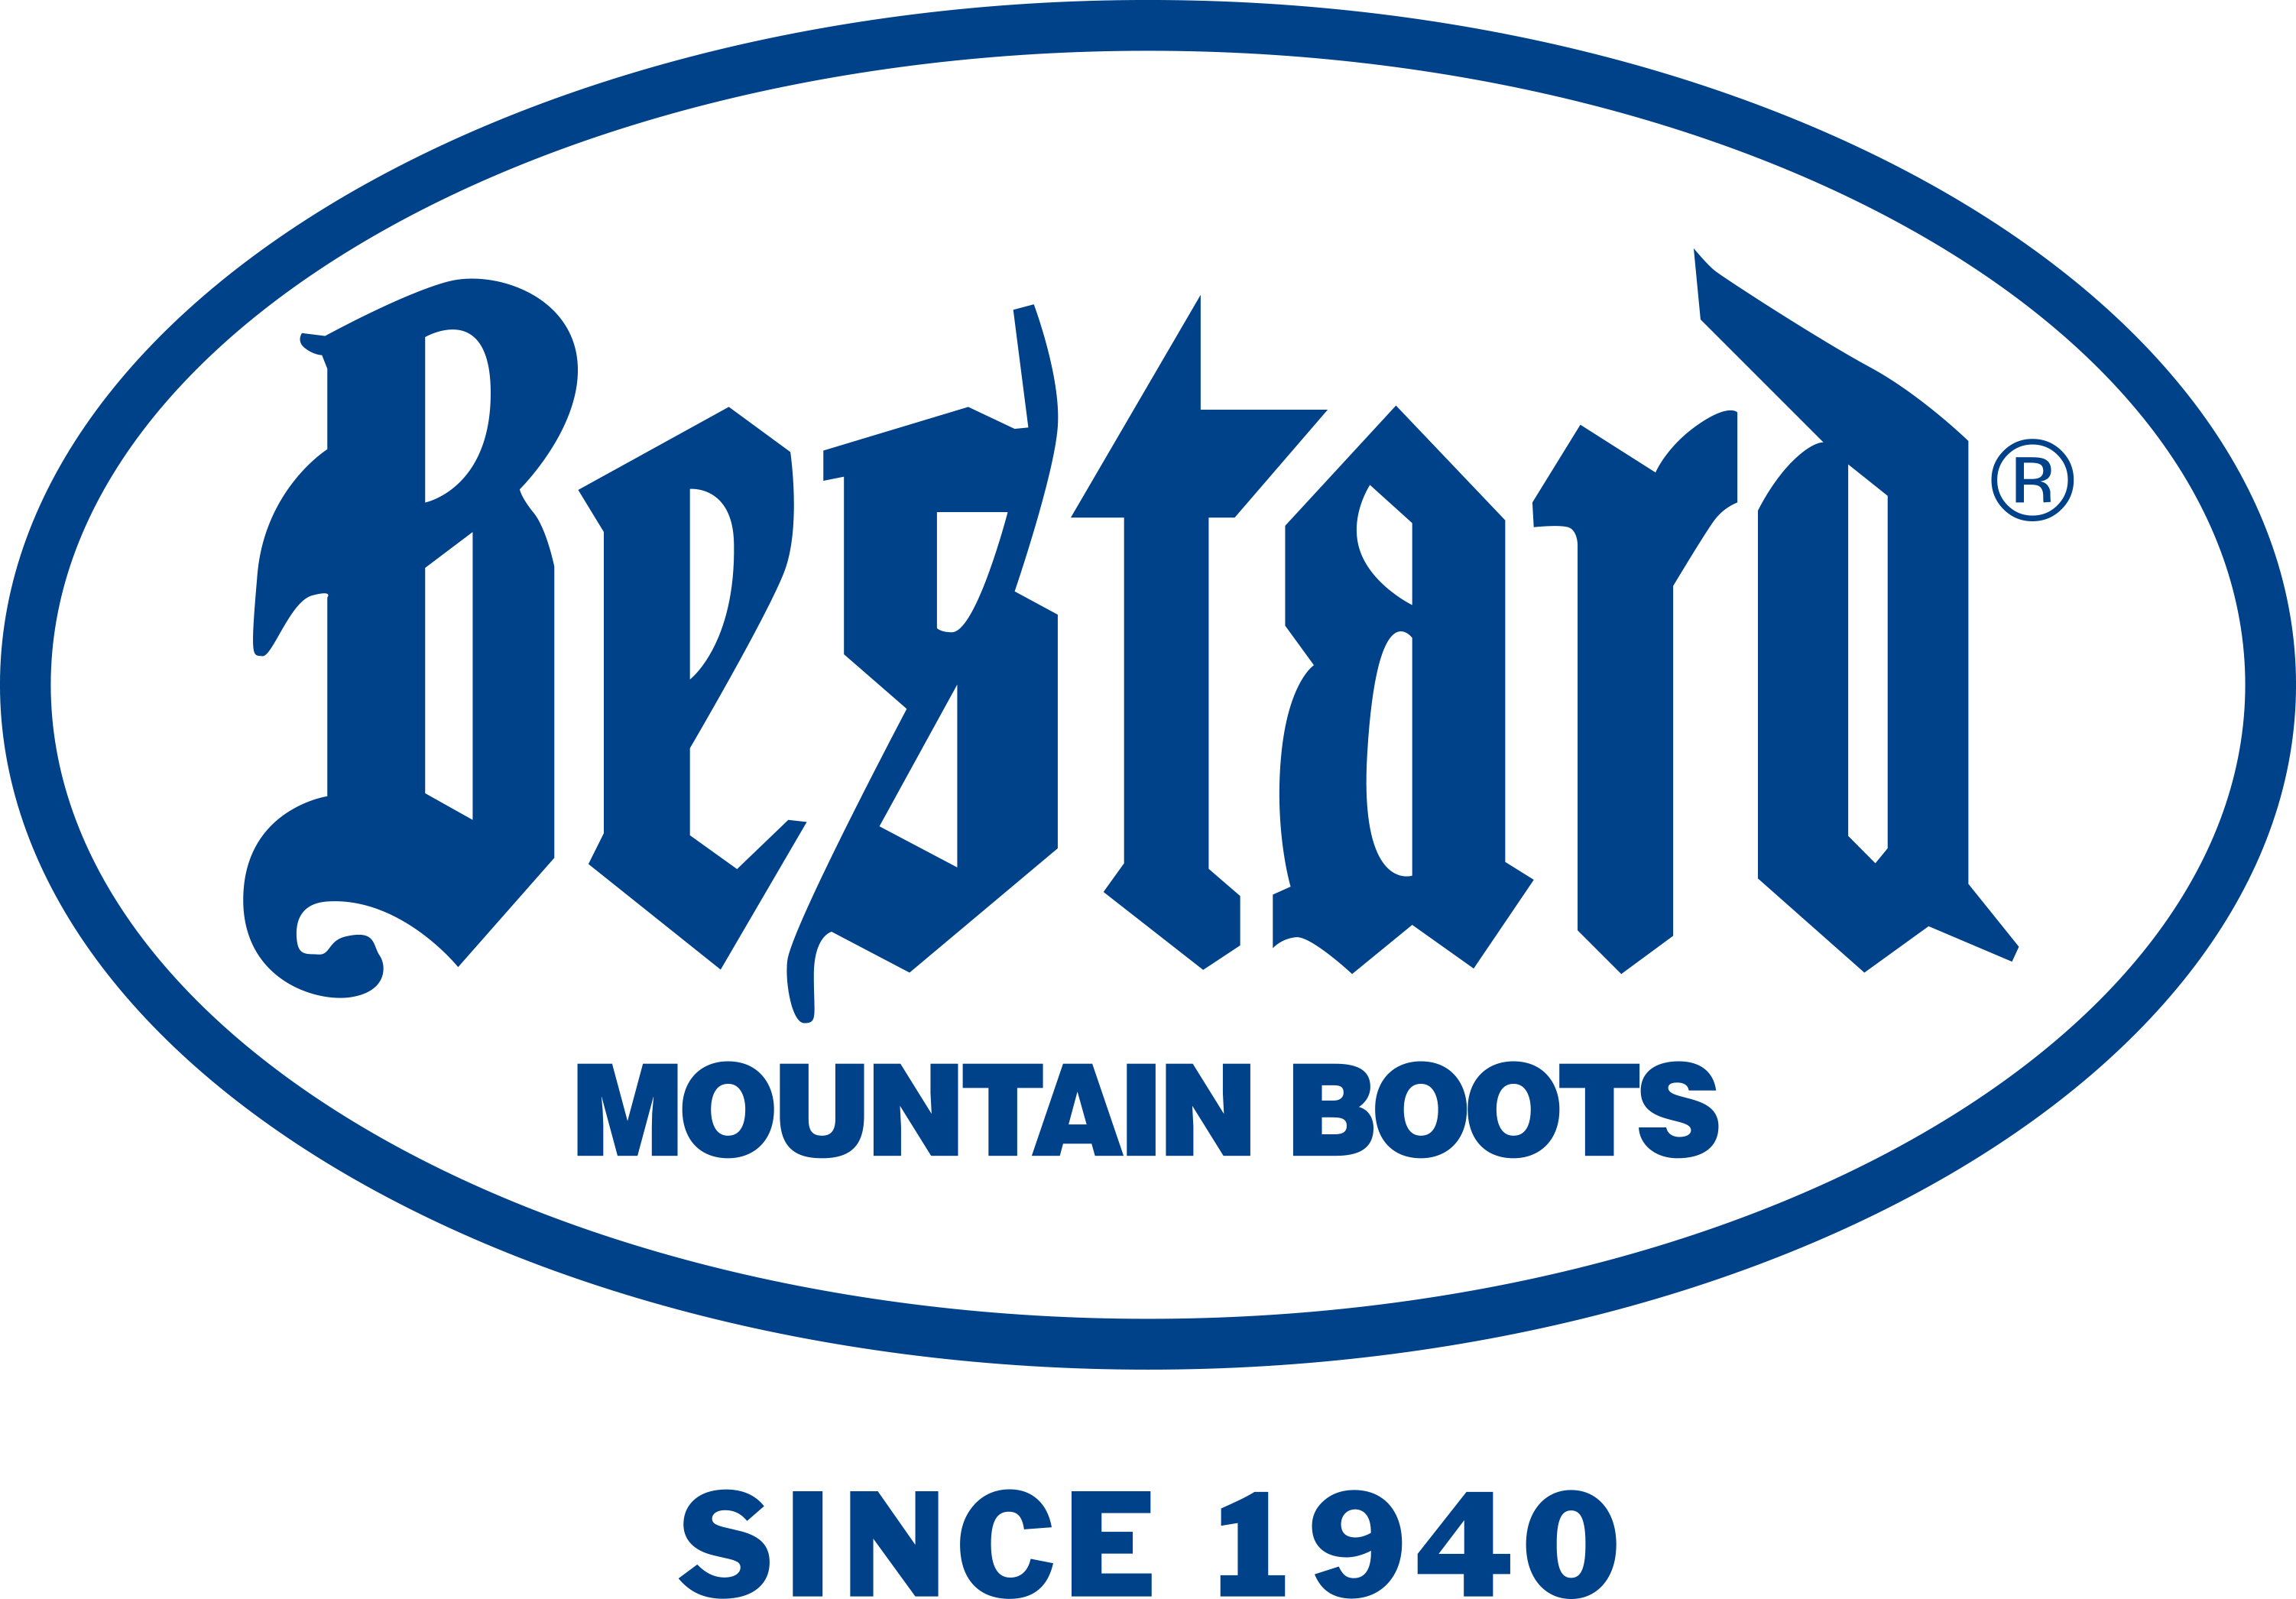 Bestard Moutain Boots